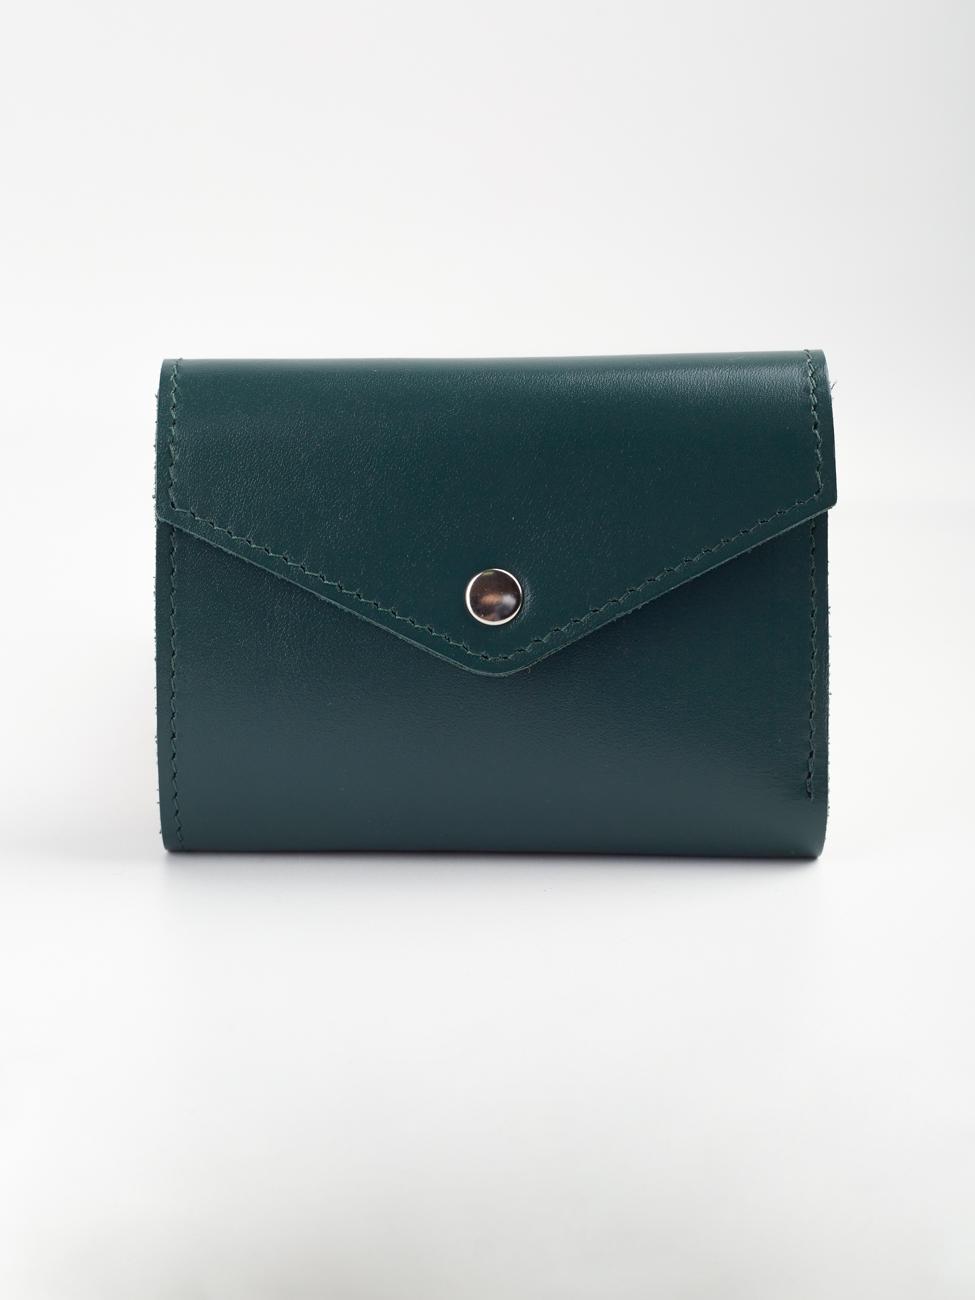 Женский кошелек темно-зеленый W013 emerald